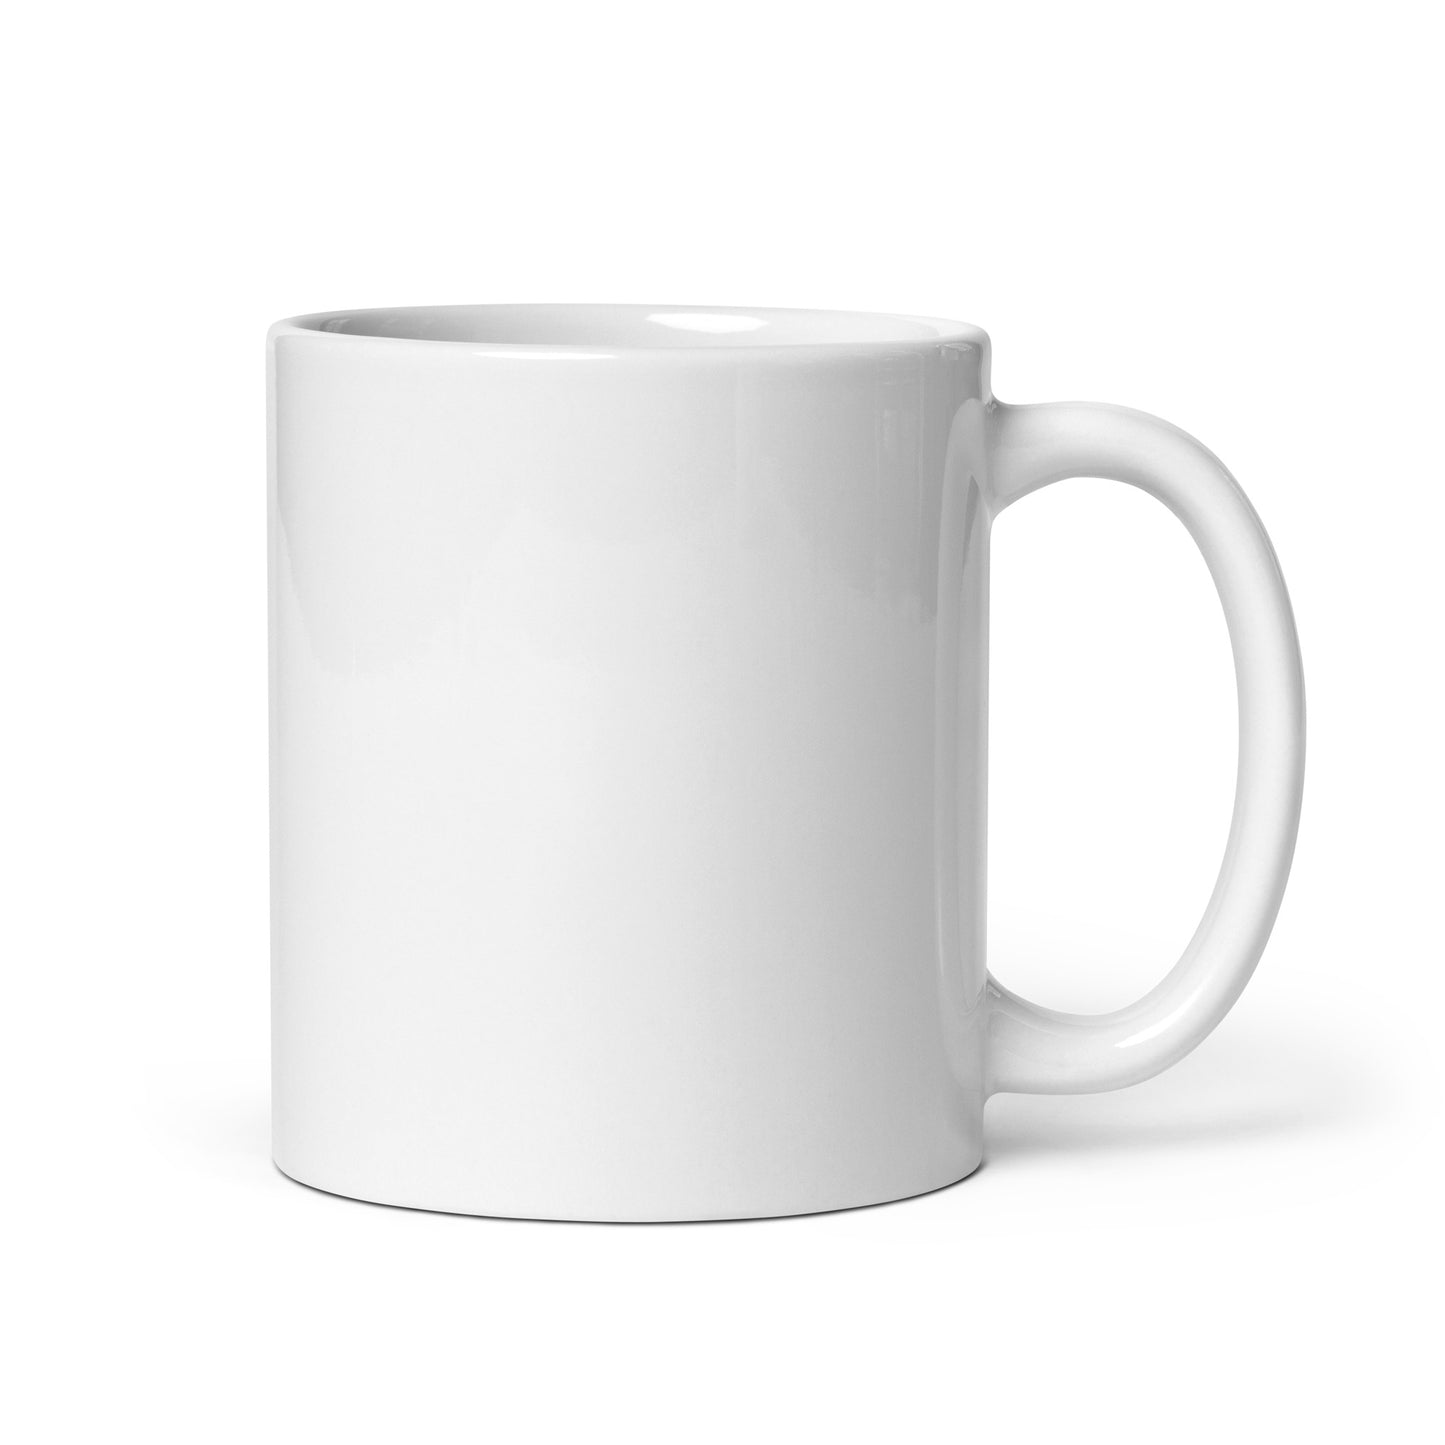 White glossy mug - Suncoast Hospice Foundation